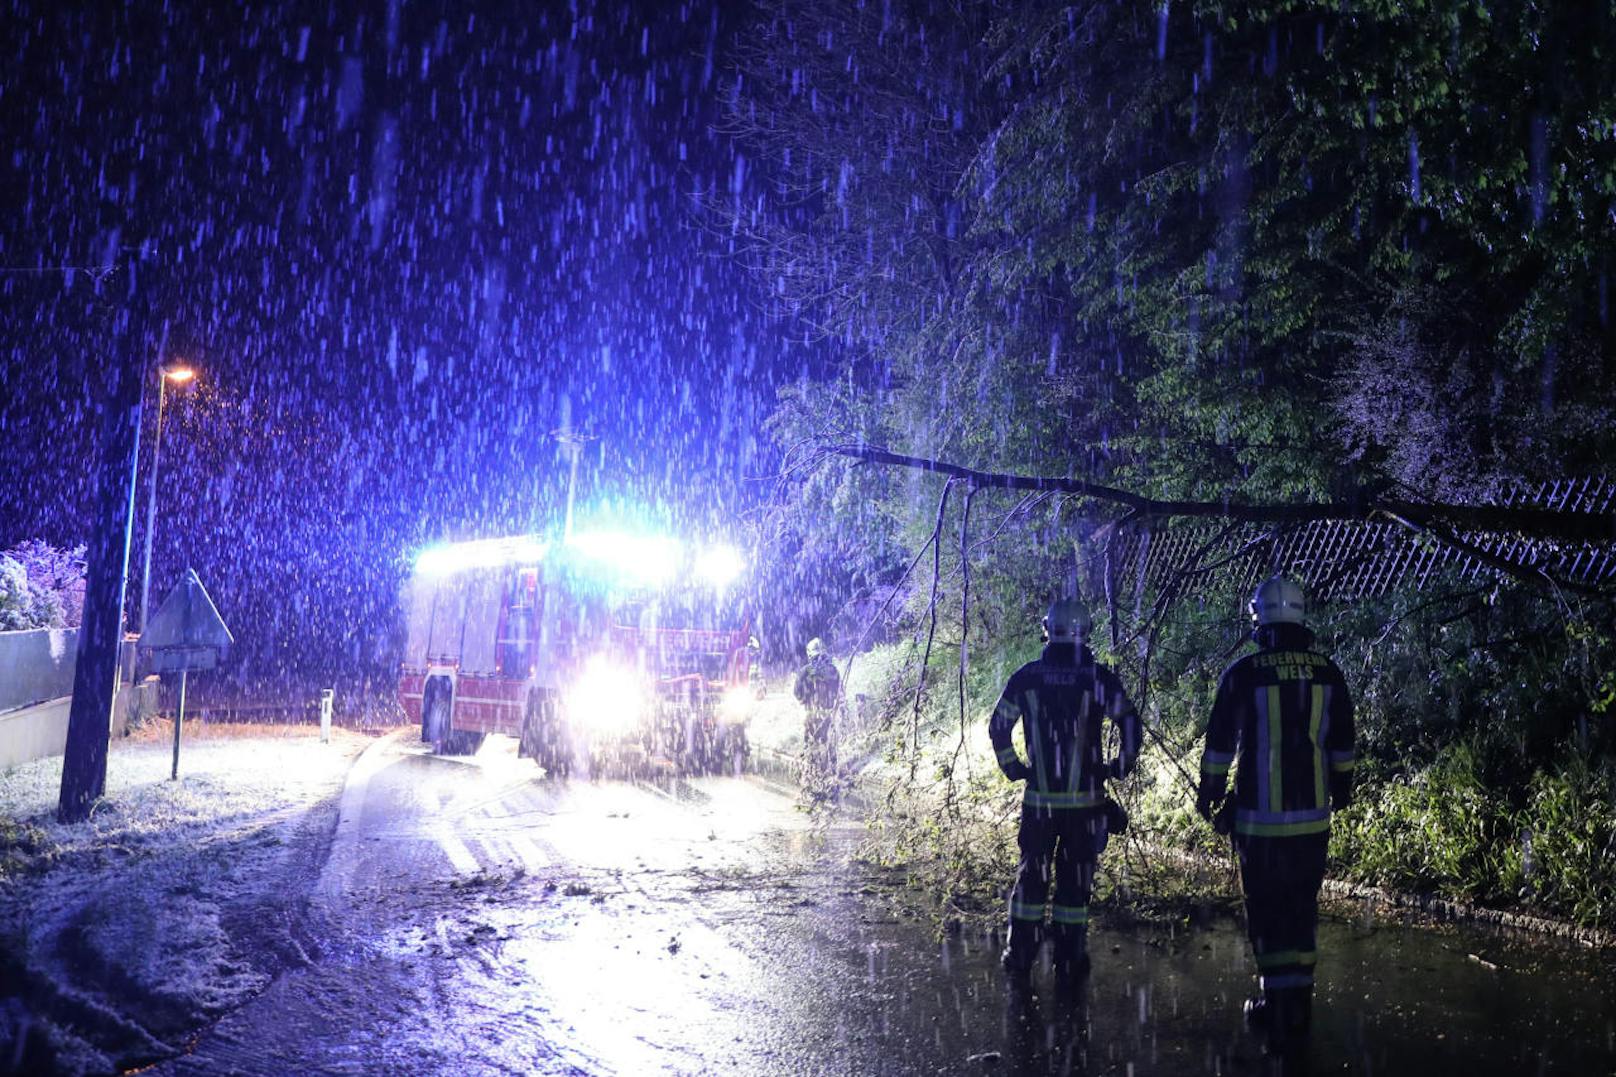 Ein neuerlicher Wintereinbruch in der Nacht auf Freitag sorgt derzeit für viele Einsätze der Feuerwehr. Viele Bäume halten der Last durch den schweren Schnee nicht stand und knicken um. In Wels musste ein umgestürzter Baum von der Fahrbahn entfernt werden.